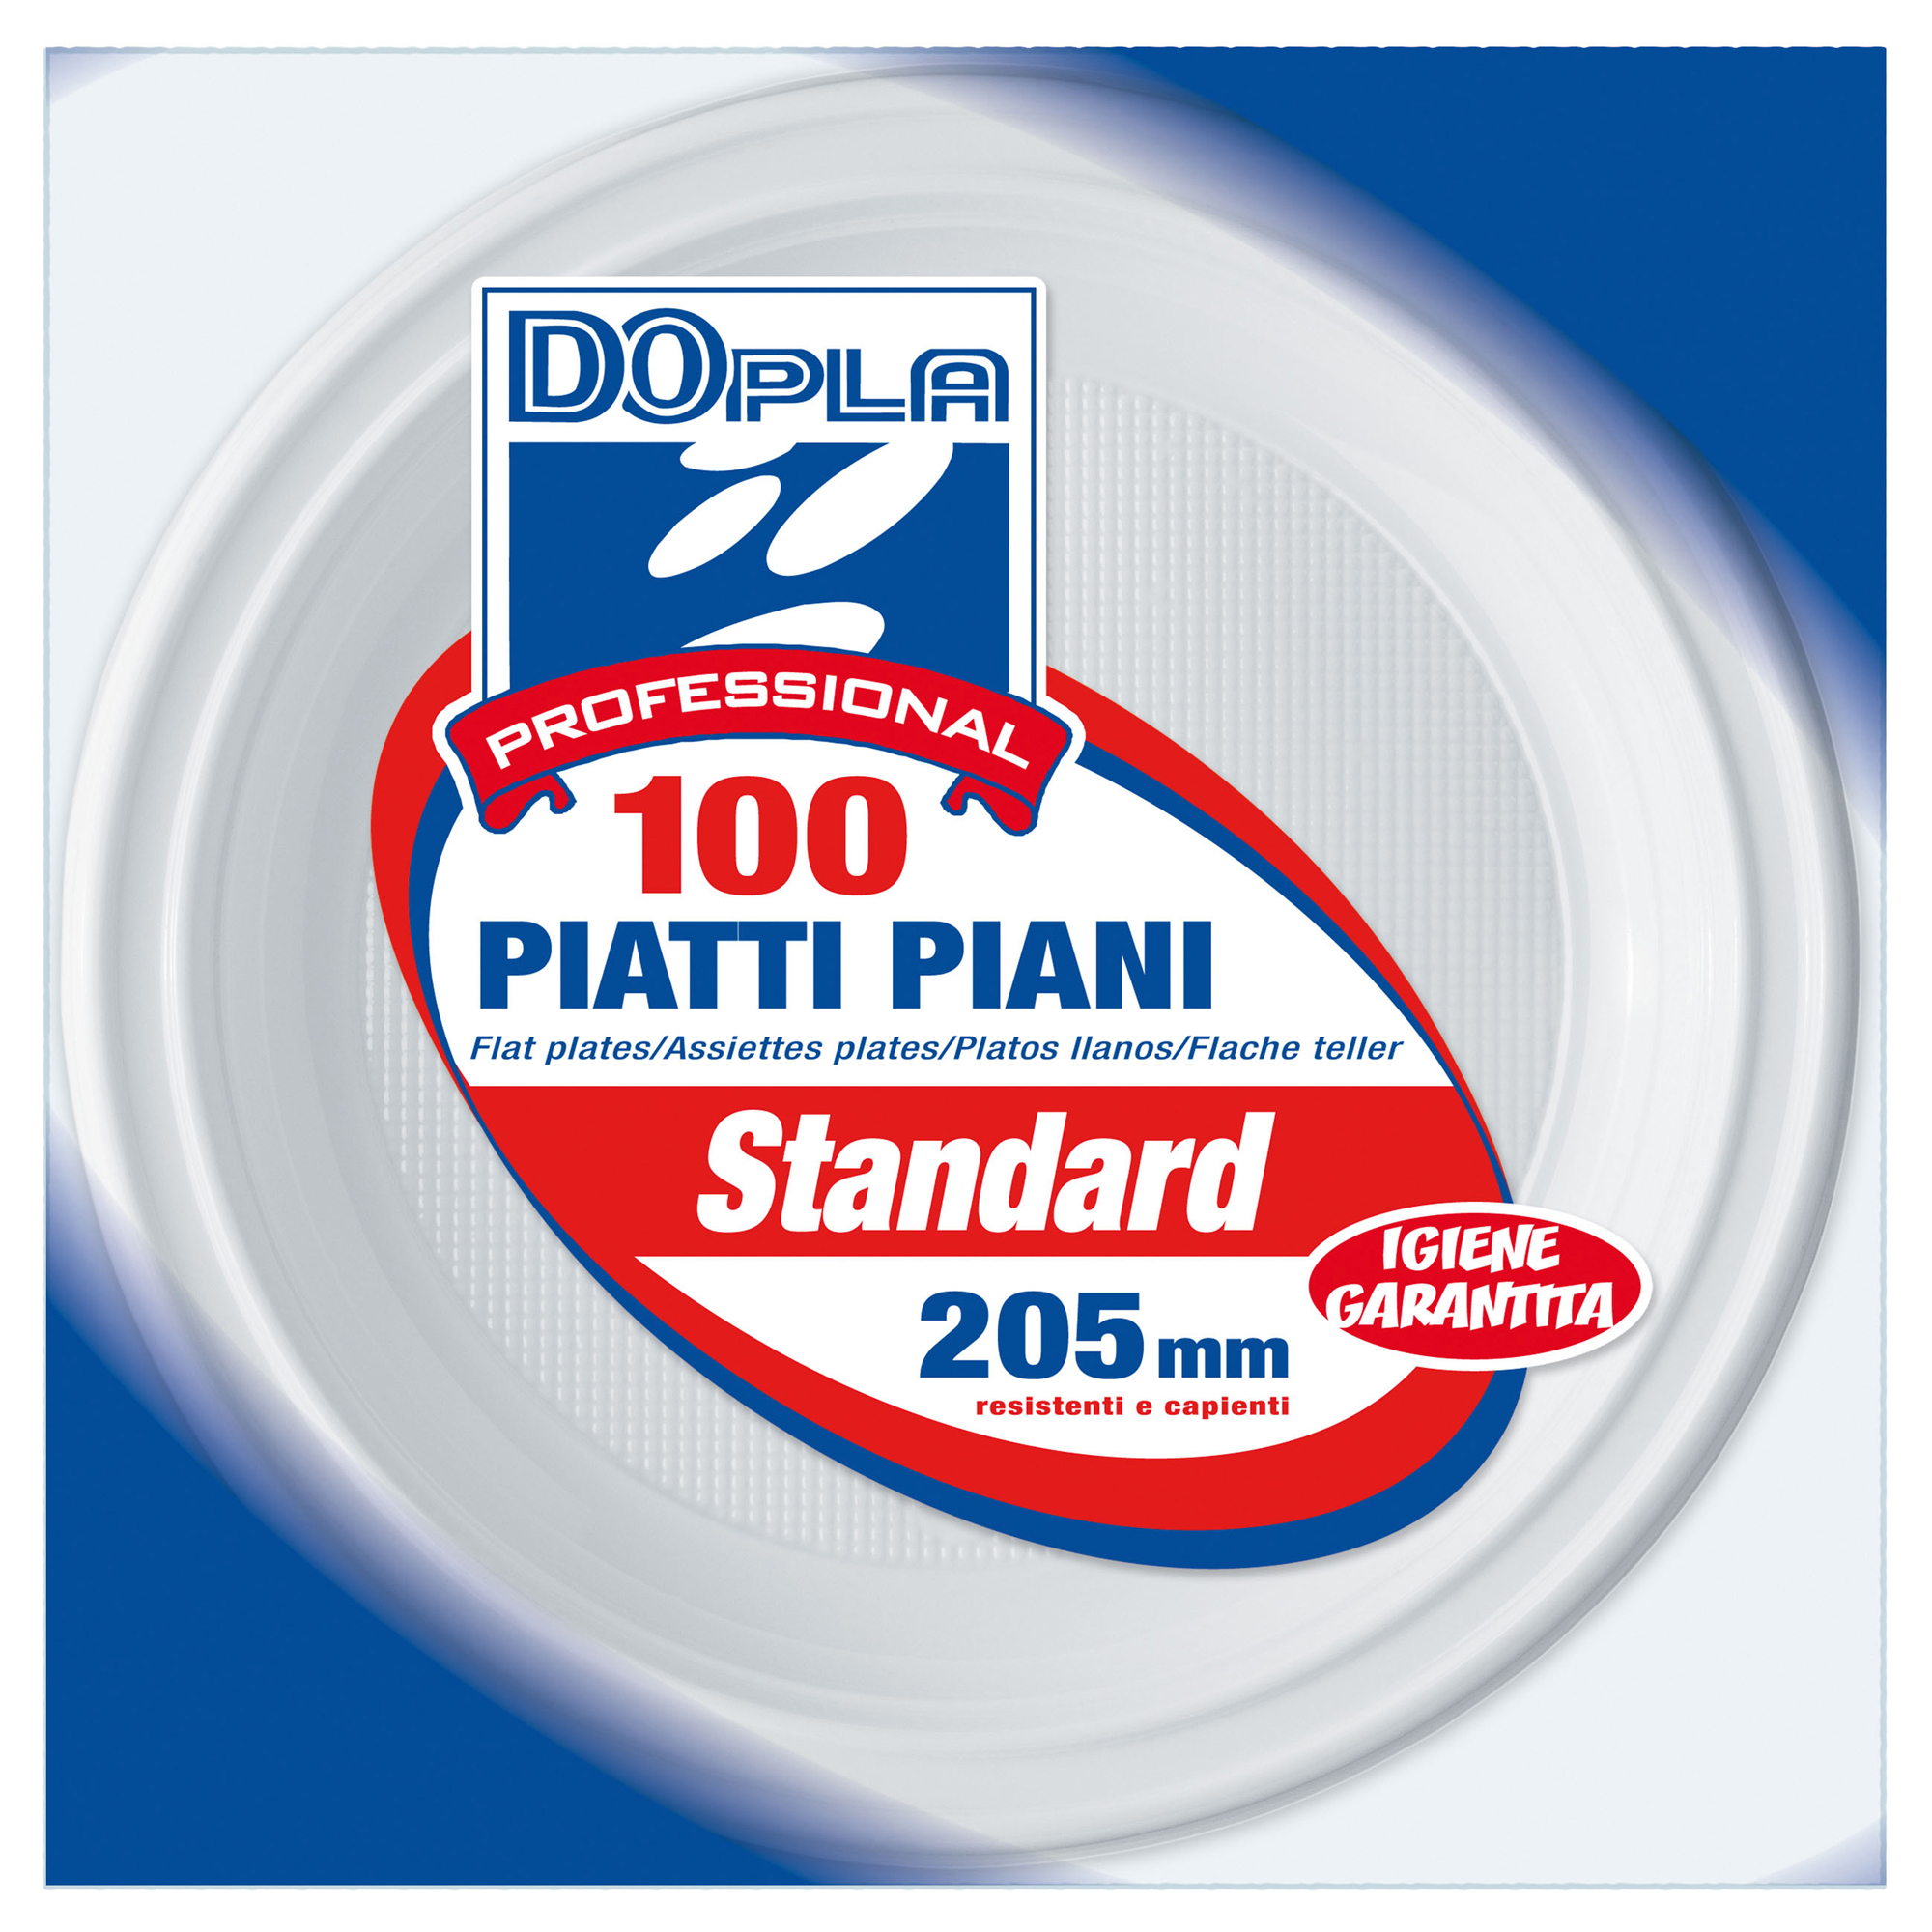 100 Piatti Piani 205mm Dopla Professional 1236 8005090410083